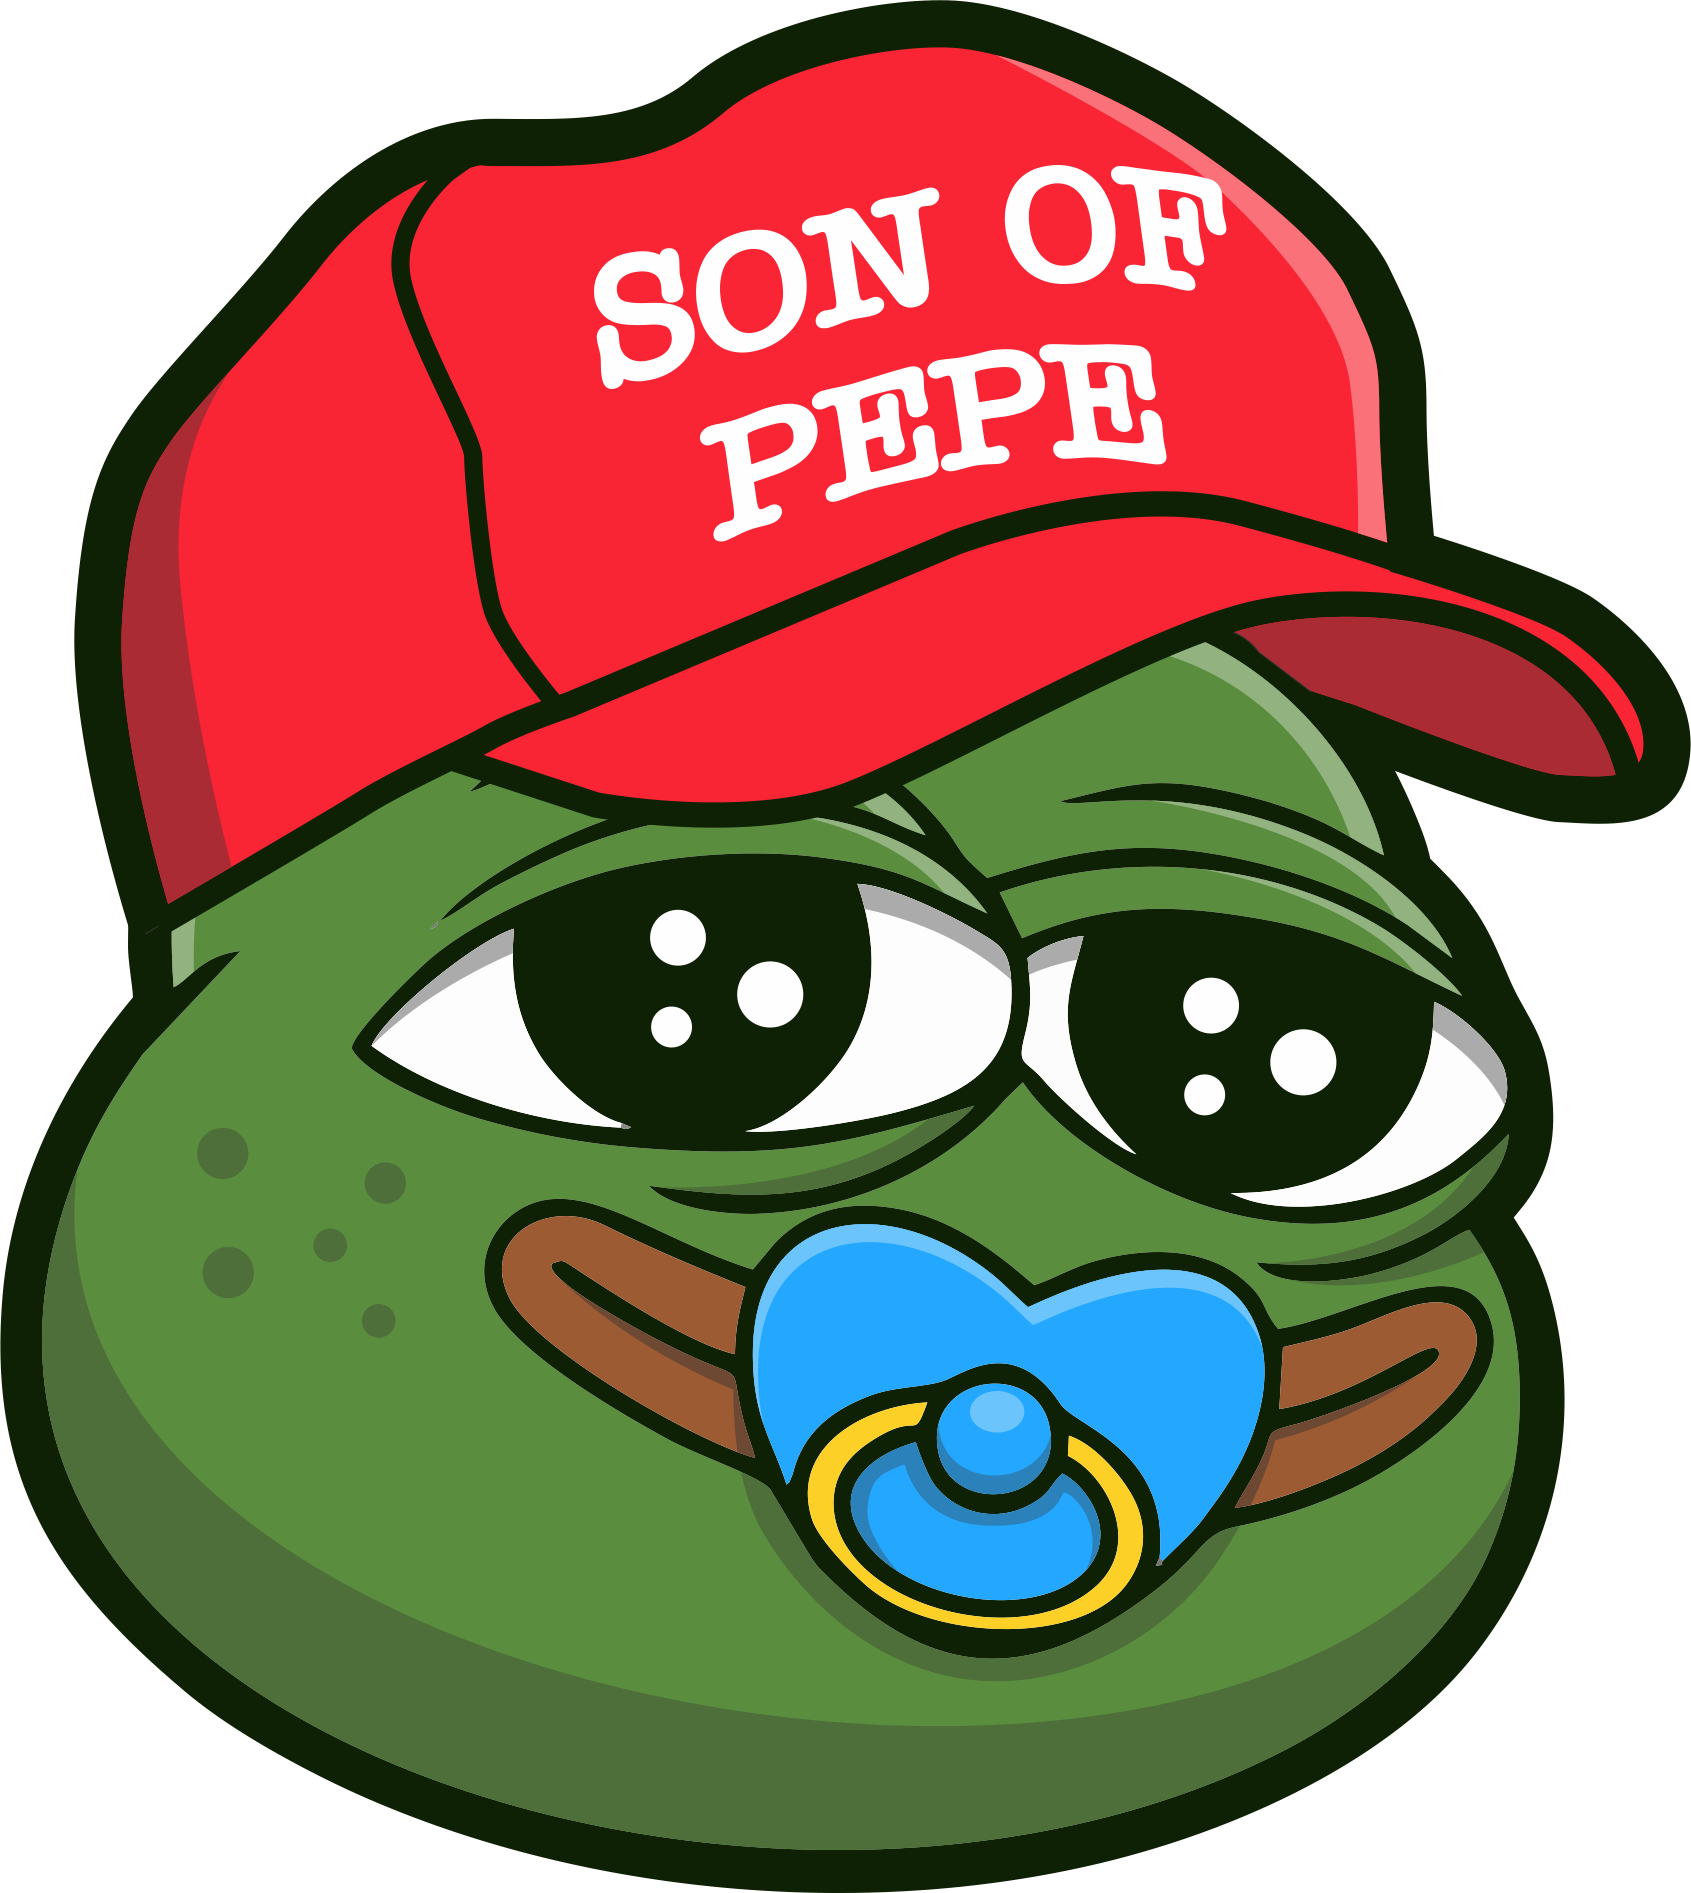 Son of Pepe - Meme Coin